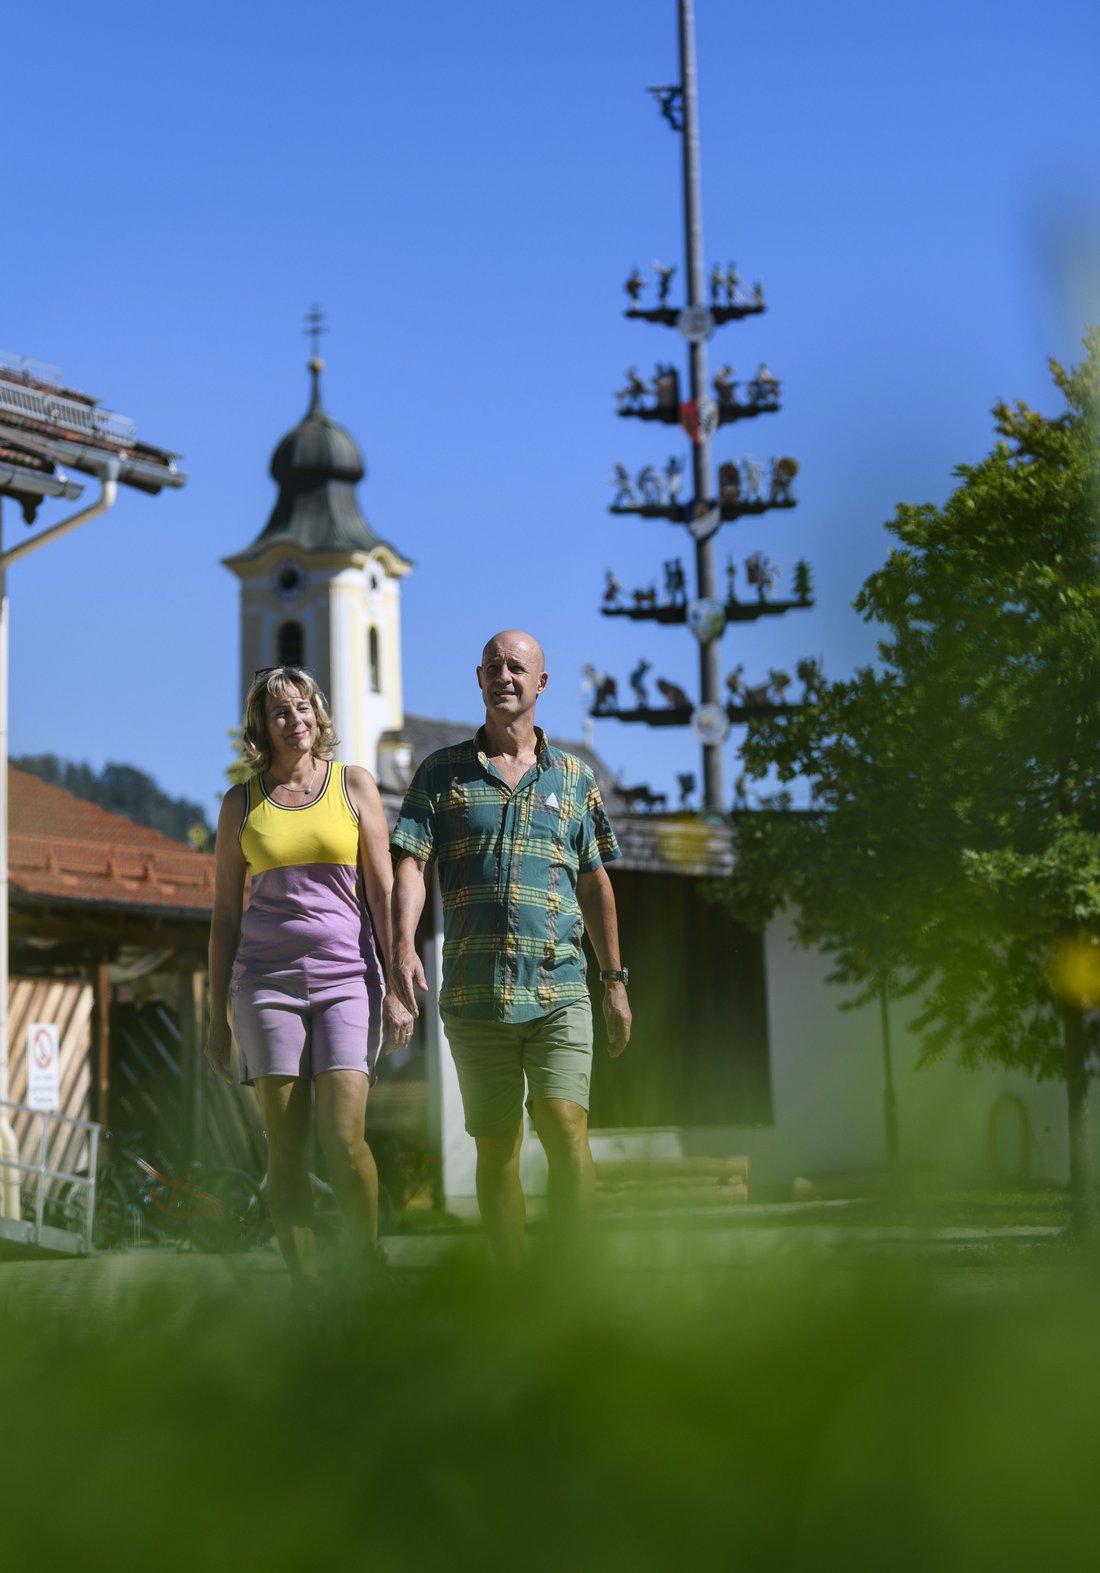 Pärchen spaziert am Dorfplatz der Gemeinde Schleching mit der katholischen Kirche im Hintergrund